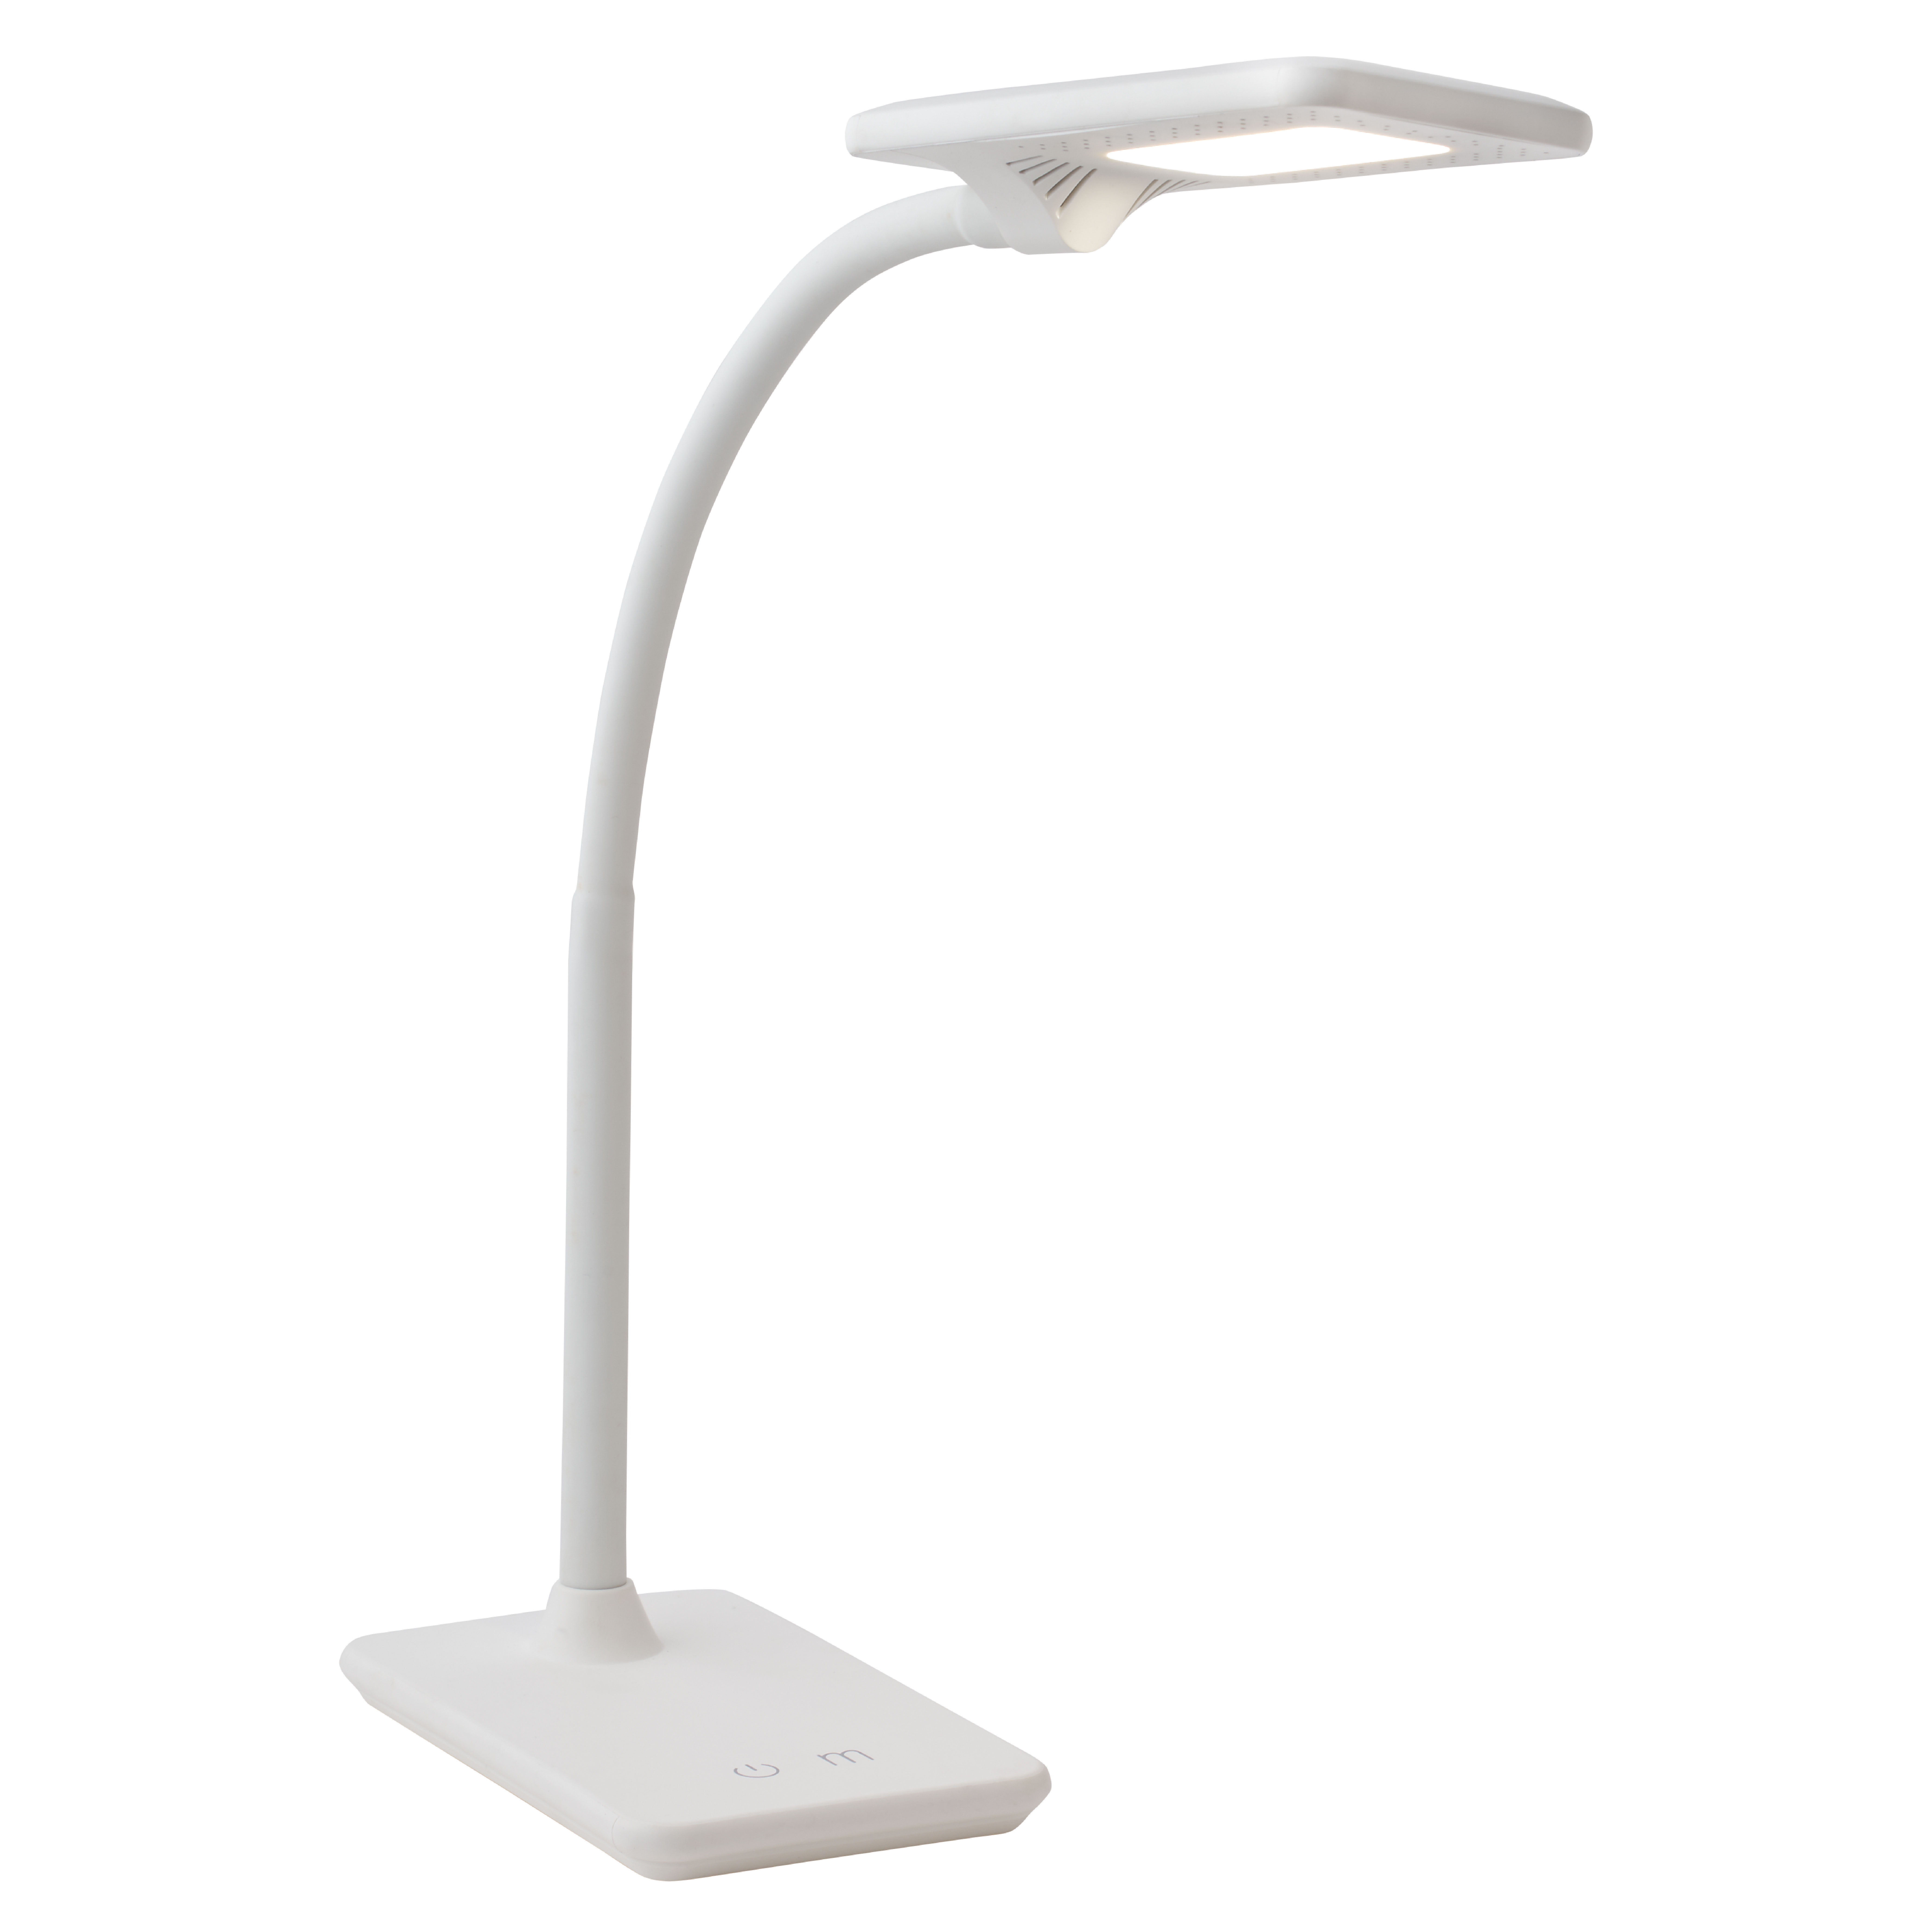 Kootion LED Desk Lampen Home Table Lamp 7 Levels Adjustable Night Light+USB Port